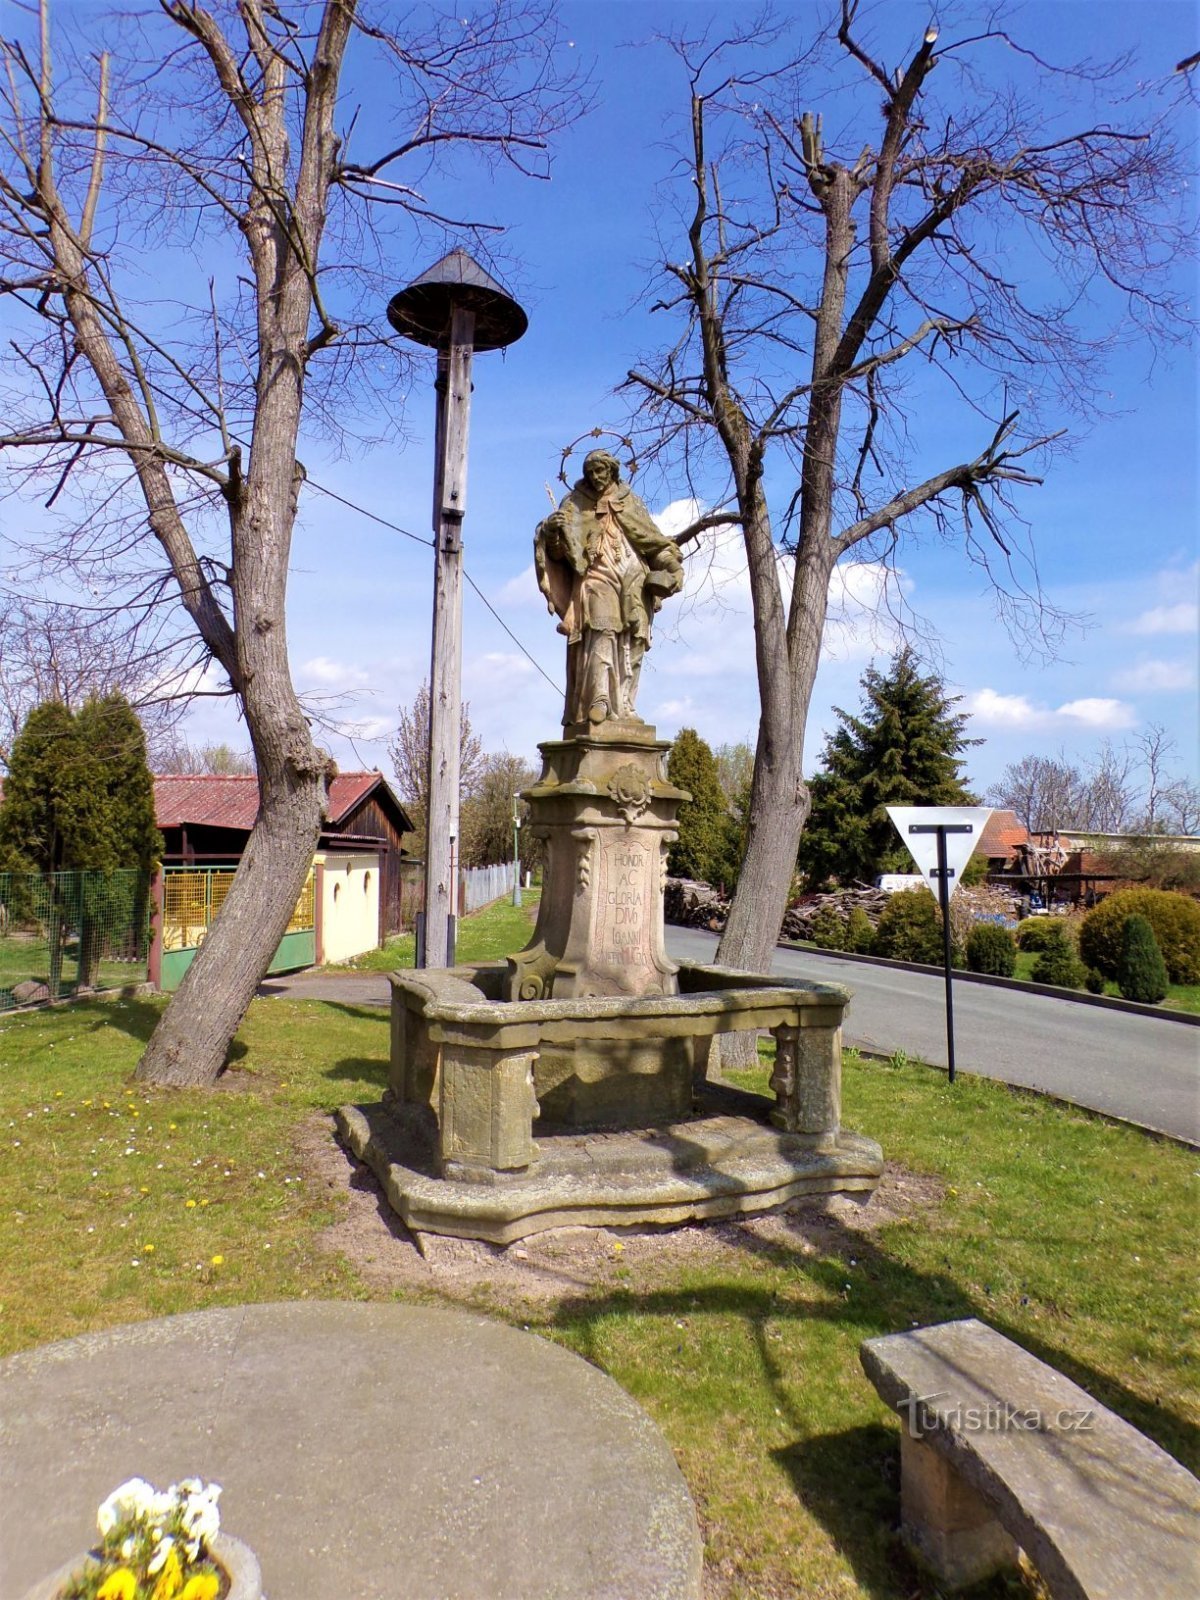 Колокольня со статуей св. Ян Непомуцкий (Шаплава, 30.4.2021)